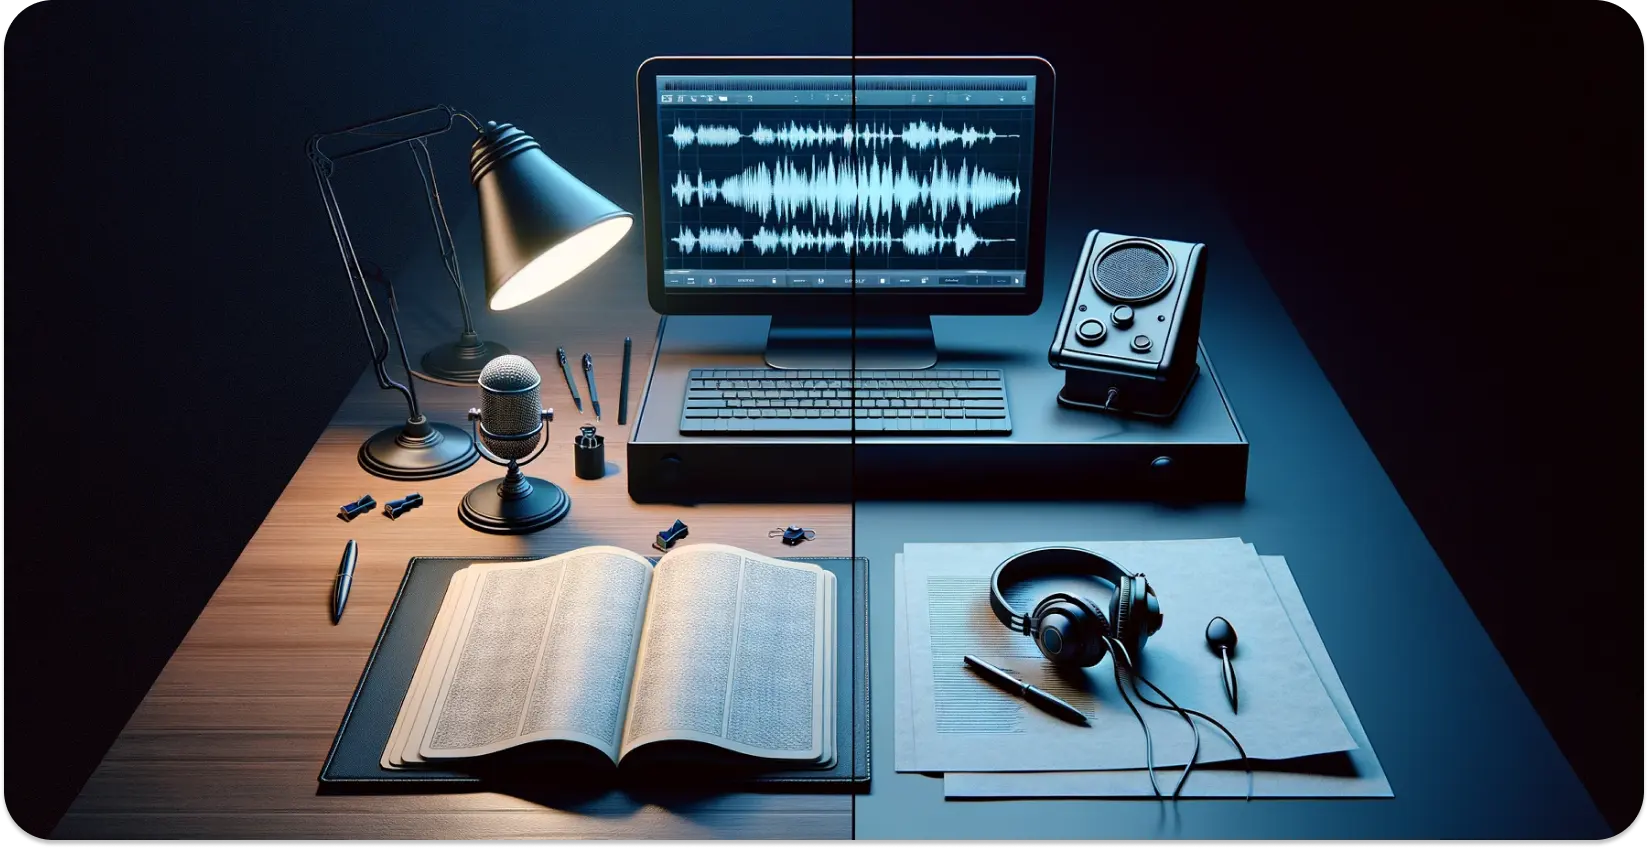 Mūsdienīga transkripcijas iestatīšana ar mikrofonu, atvērtu grāmatu un viļņu formu monitora ekrānā.